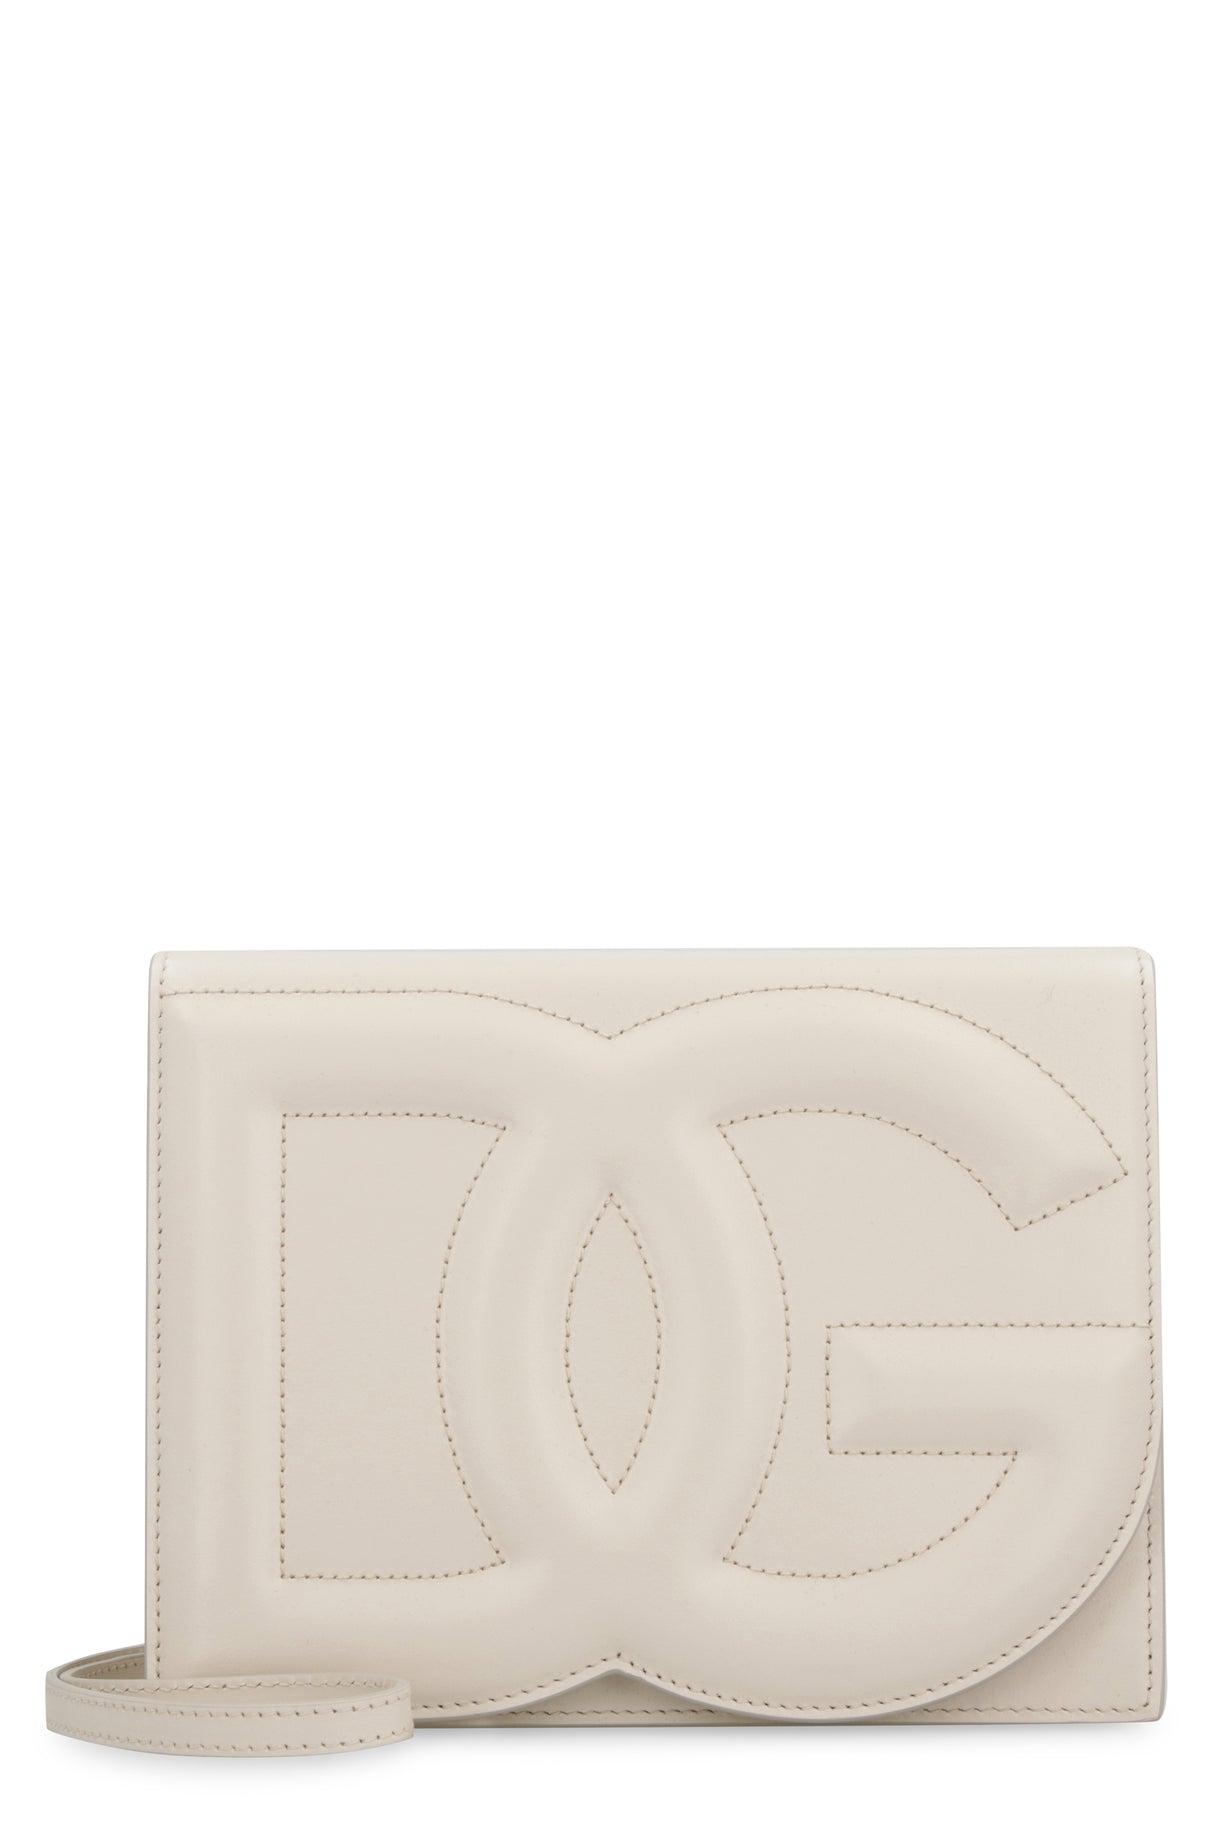 حقيبة جلدية بلون كريمي وشعار DG المنقوشة للنساء